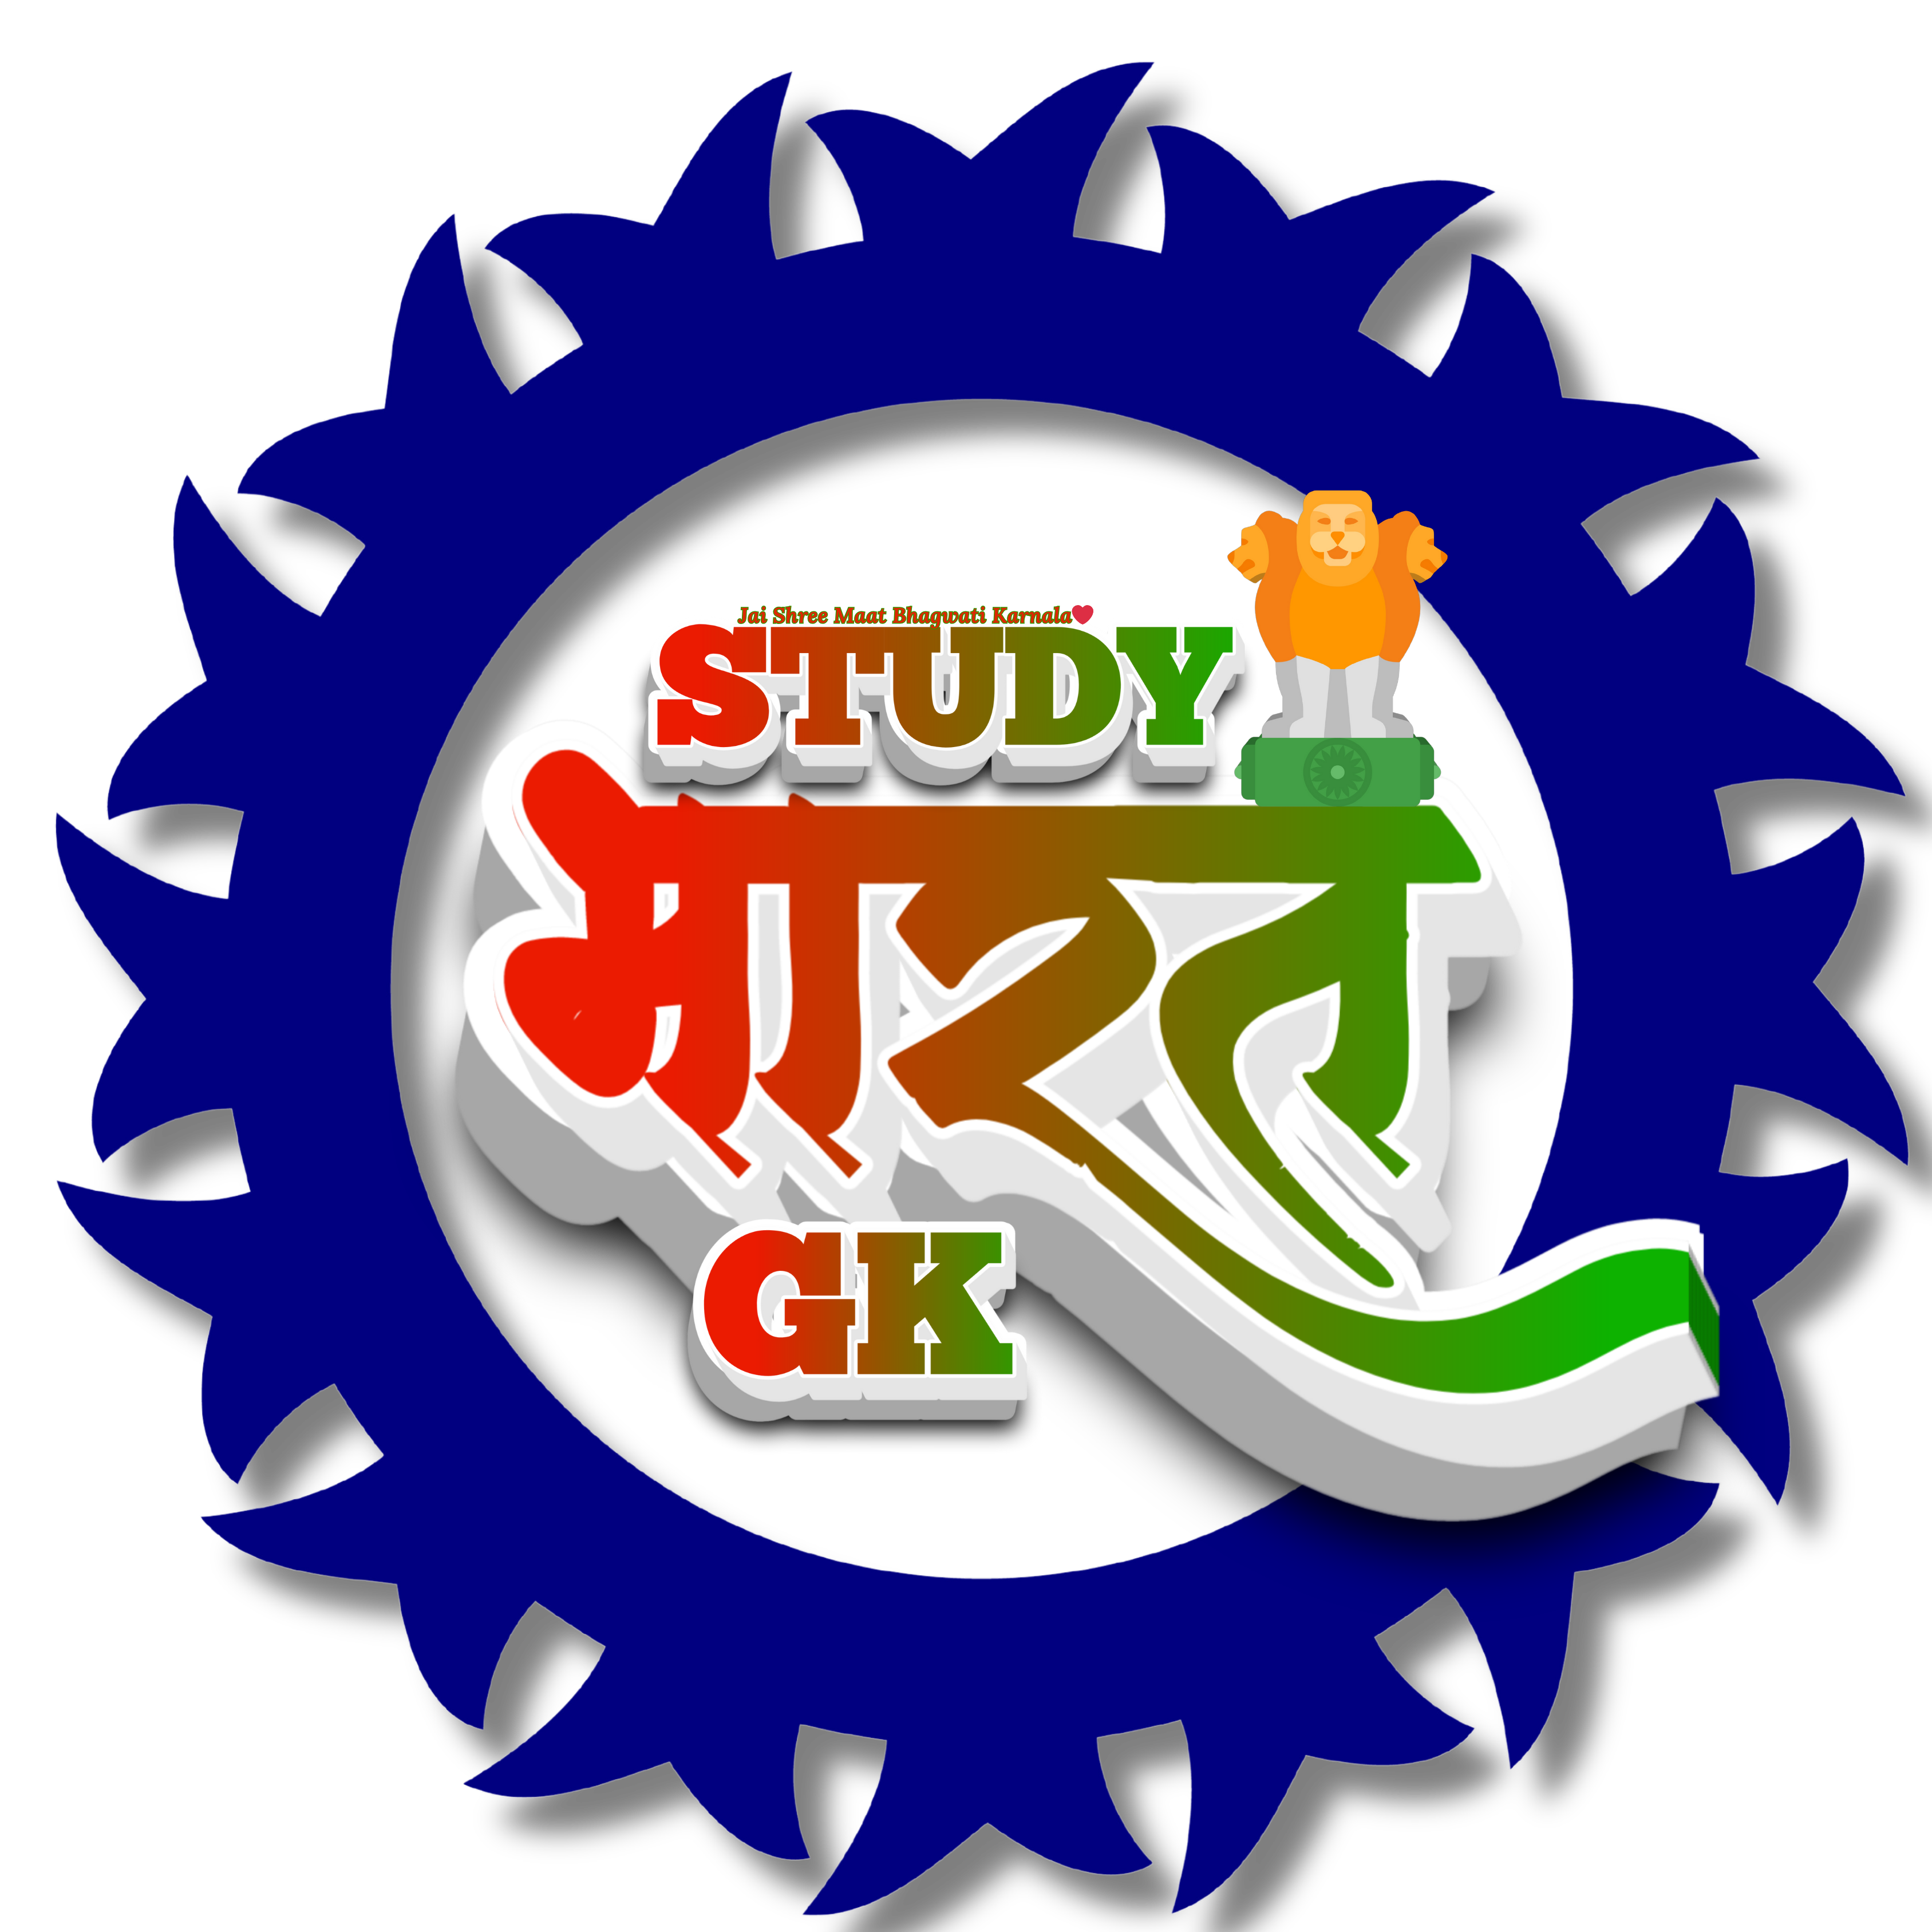 studybharatgk logo